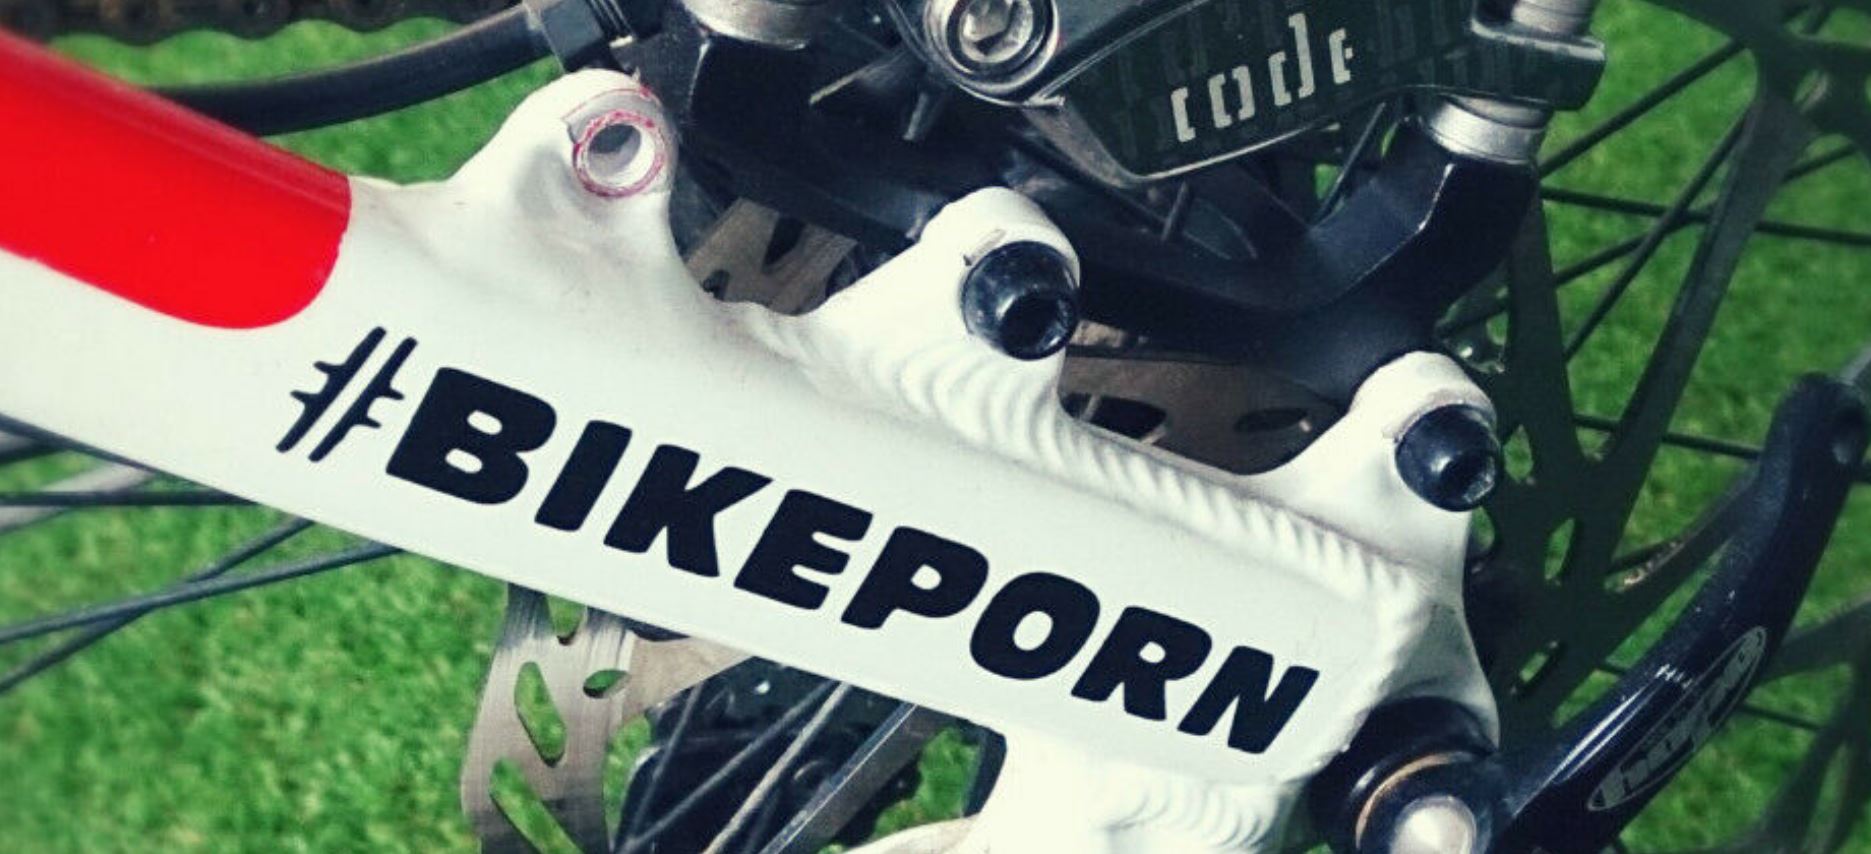 Bikeporn.JPG